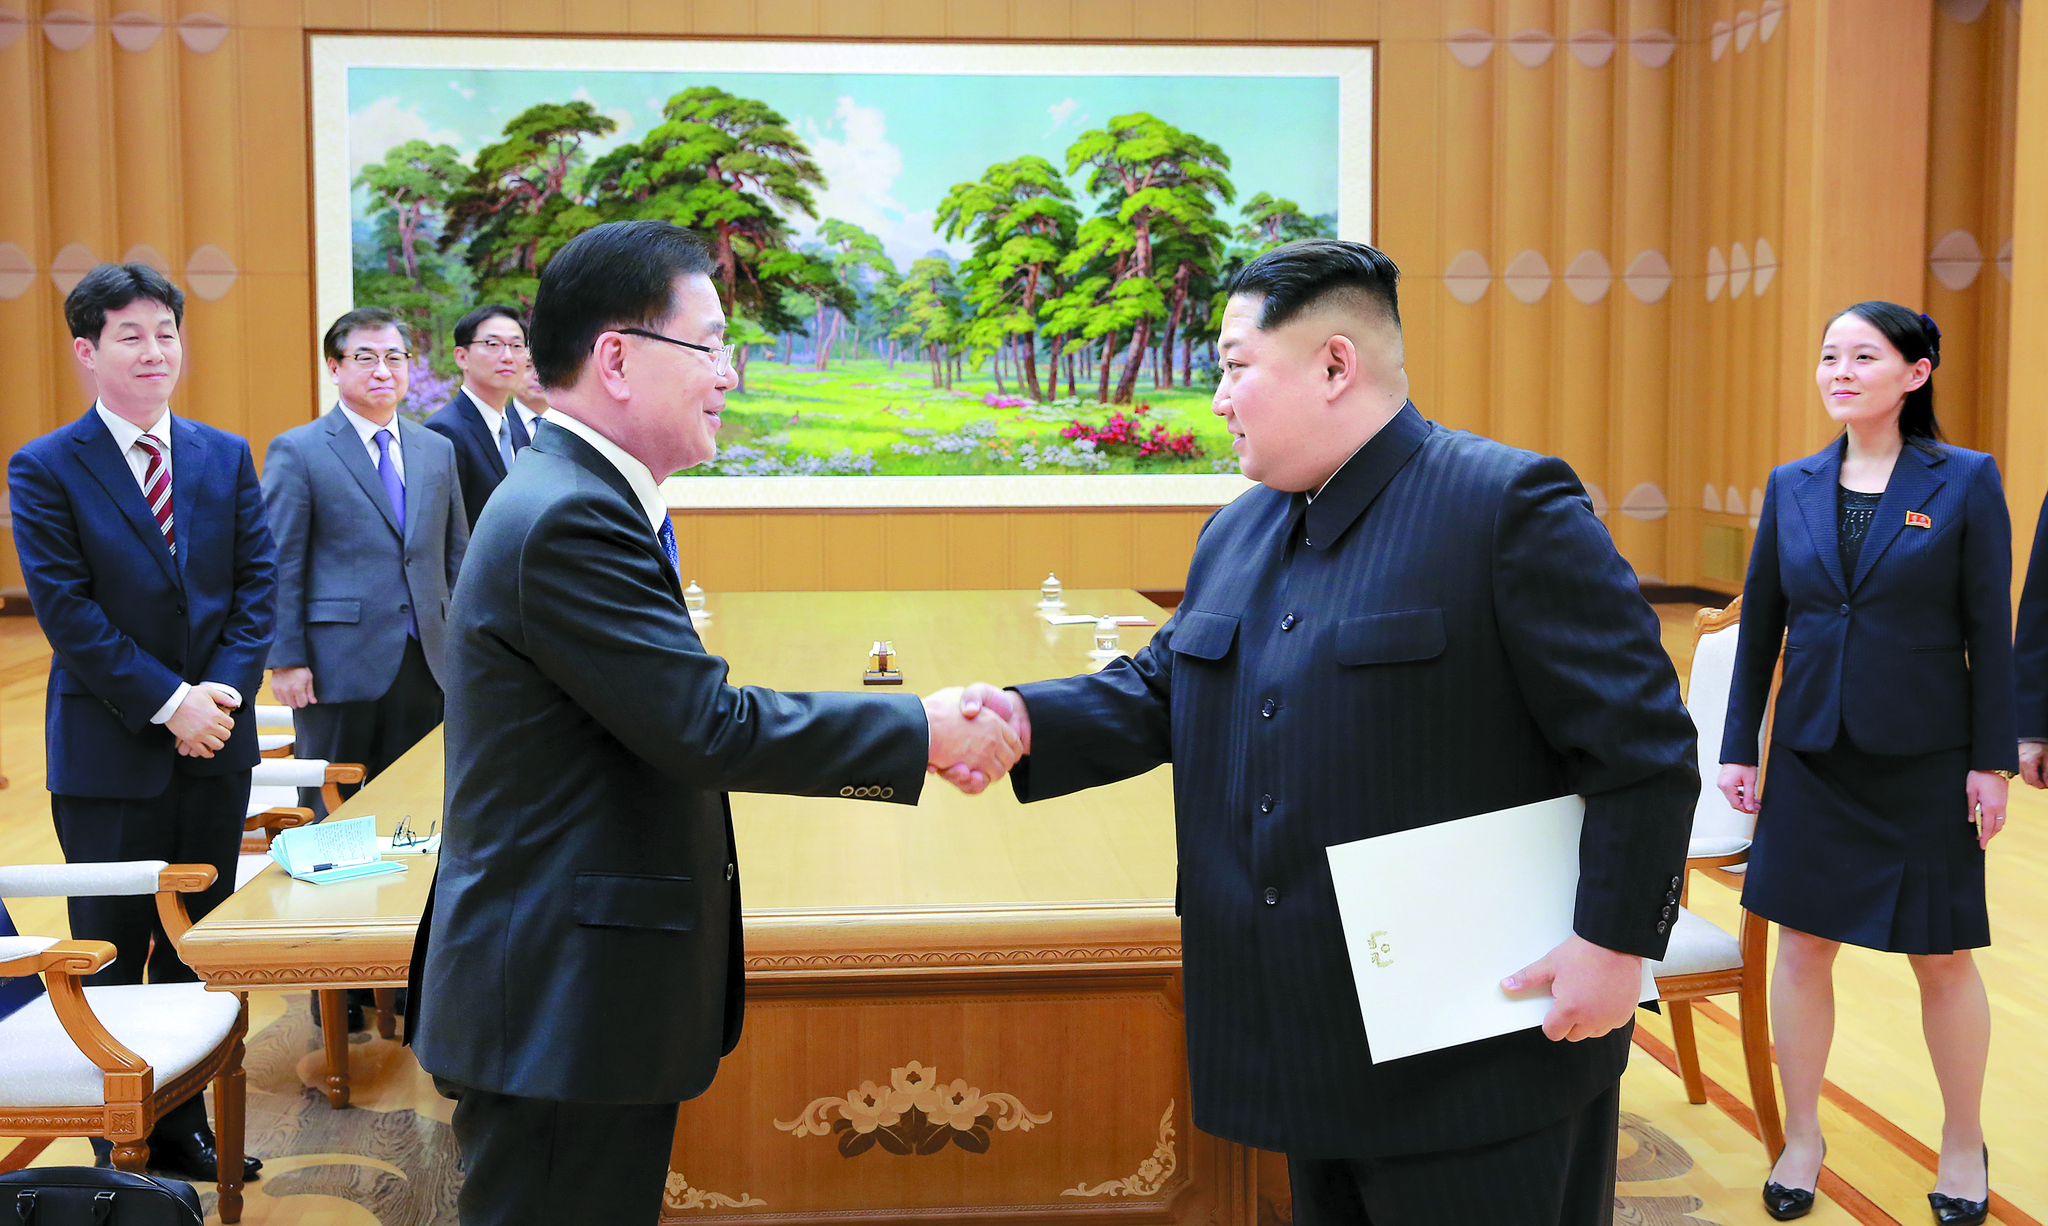 정의용 대북특사가 평양에서 북한 김정은 국무위원장과 만나 문 대통령의 친서를 전달했다. [사진 청와대]